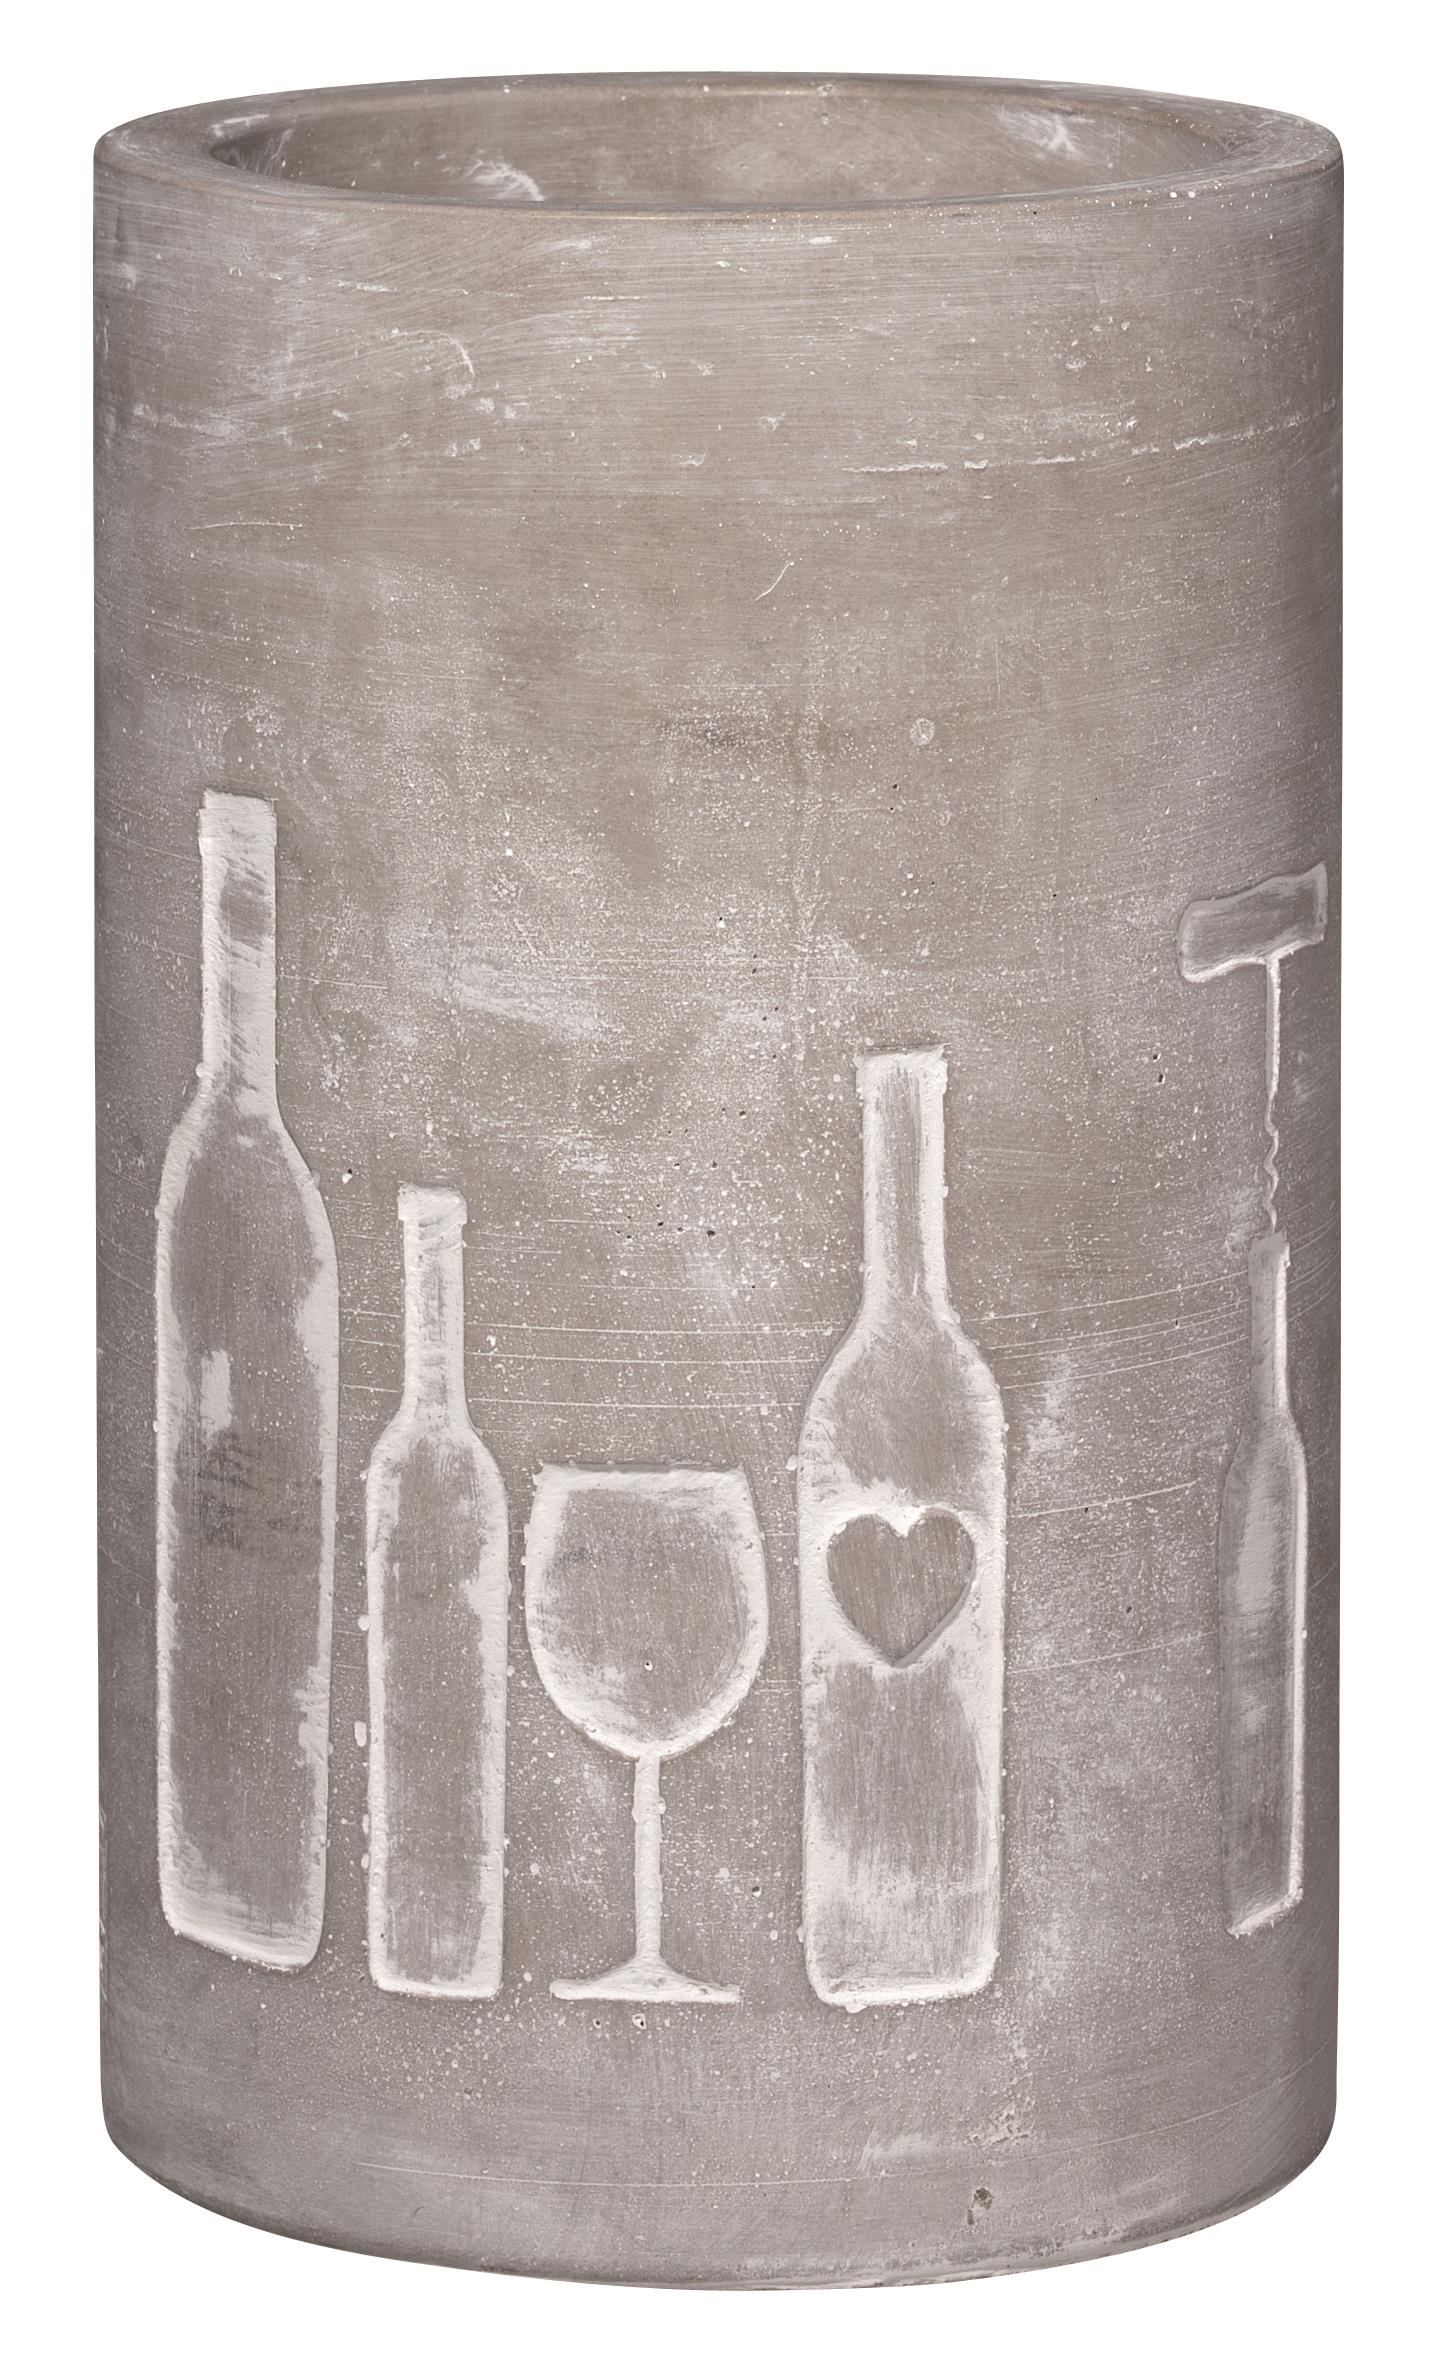 PET Vino Beton Flaschenkühler, Flasche + Glas, ca. 21cm hoch